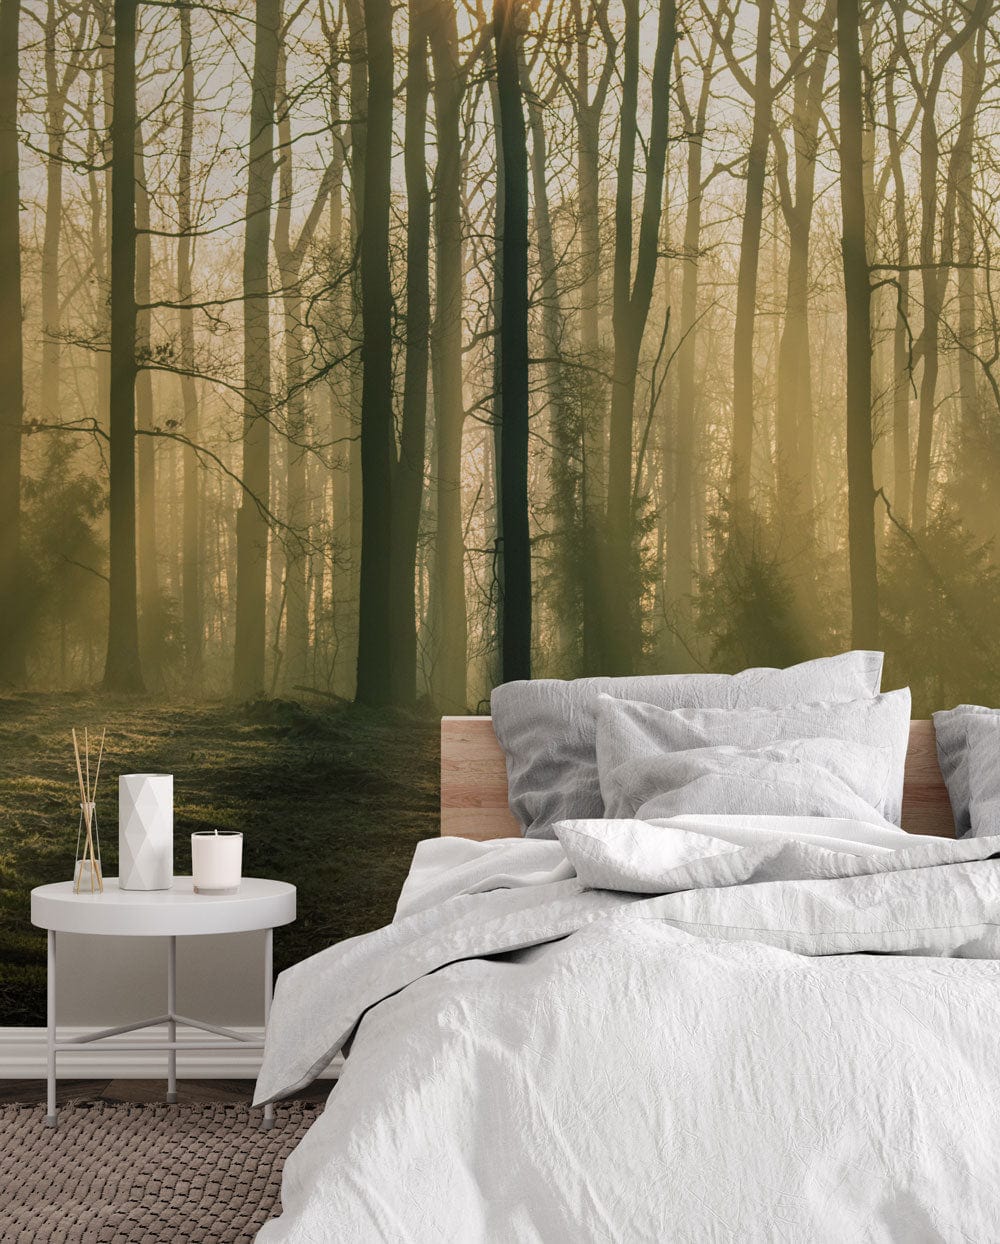 Bedroom interior design brown forest scenery wallpaper